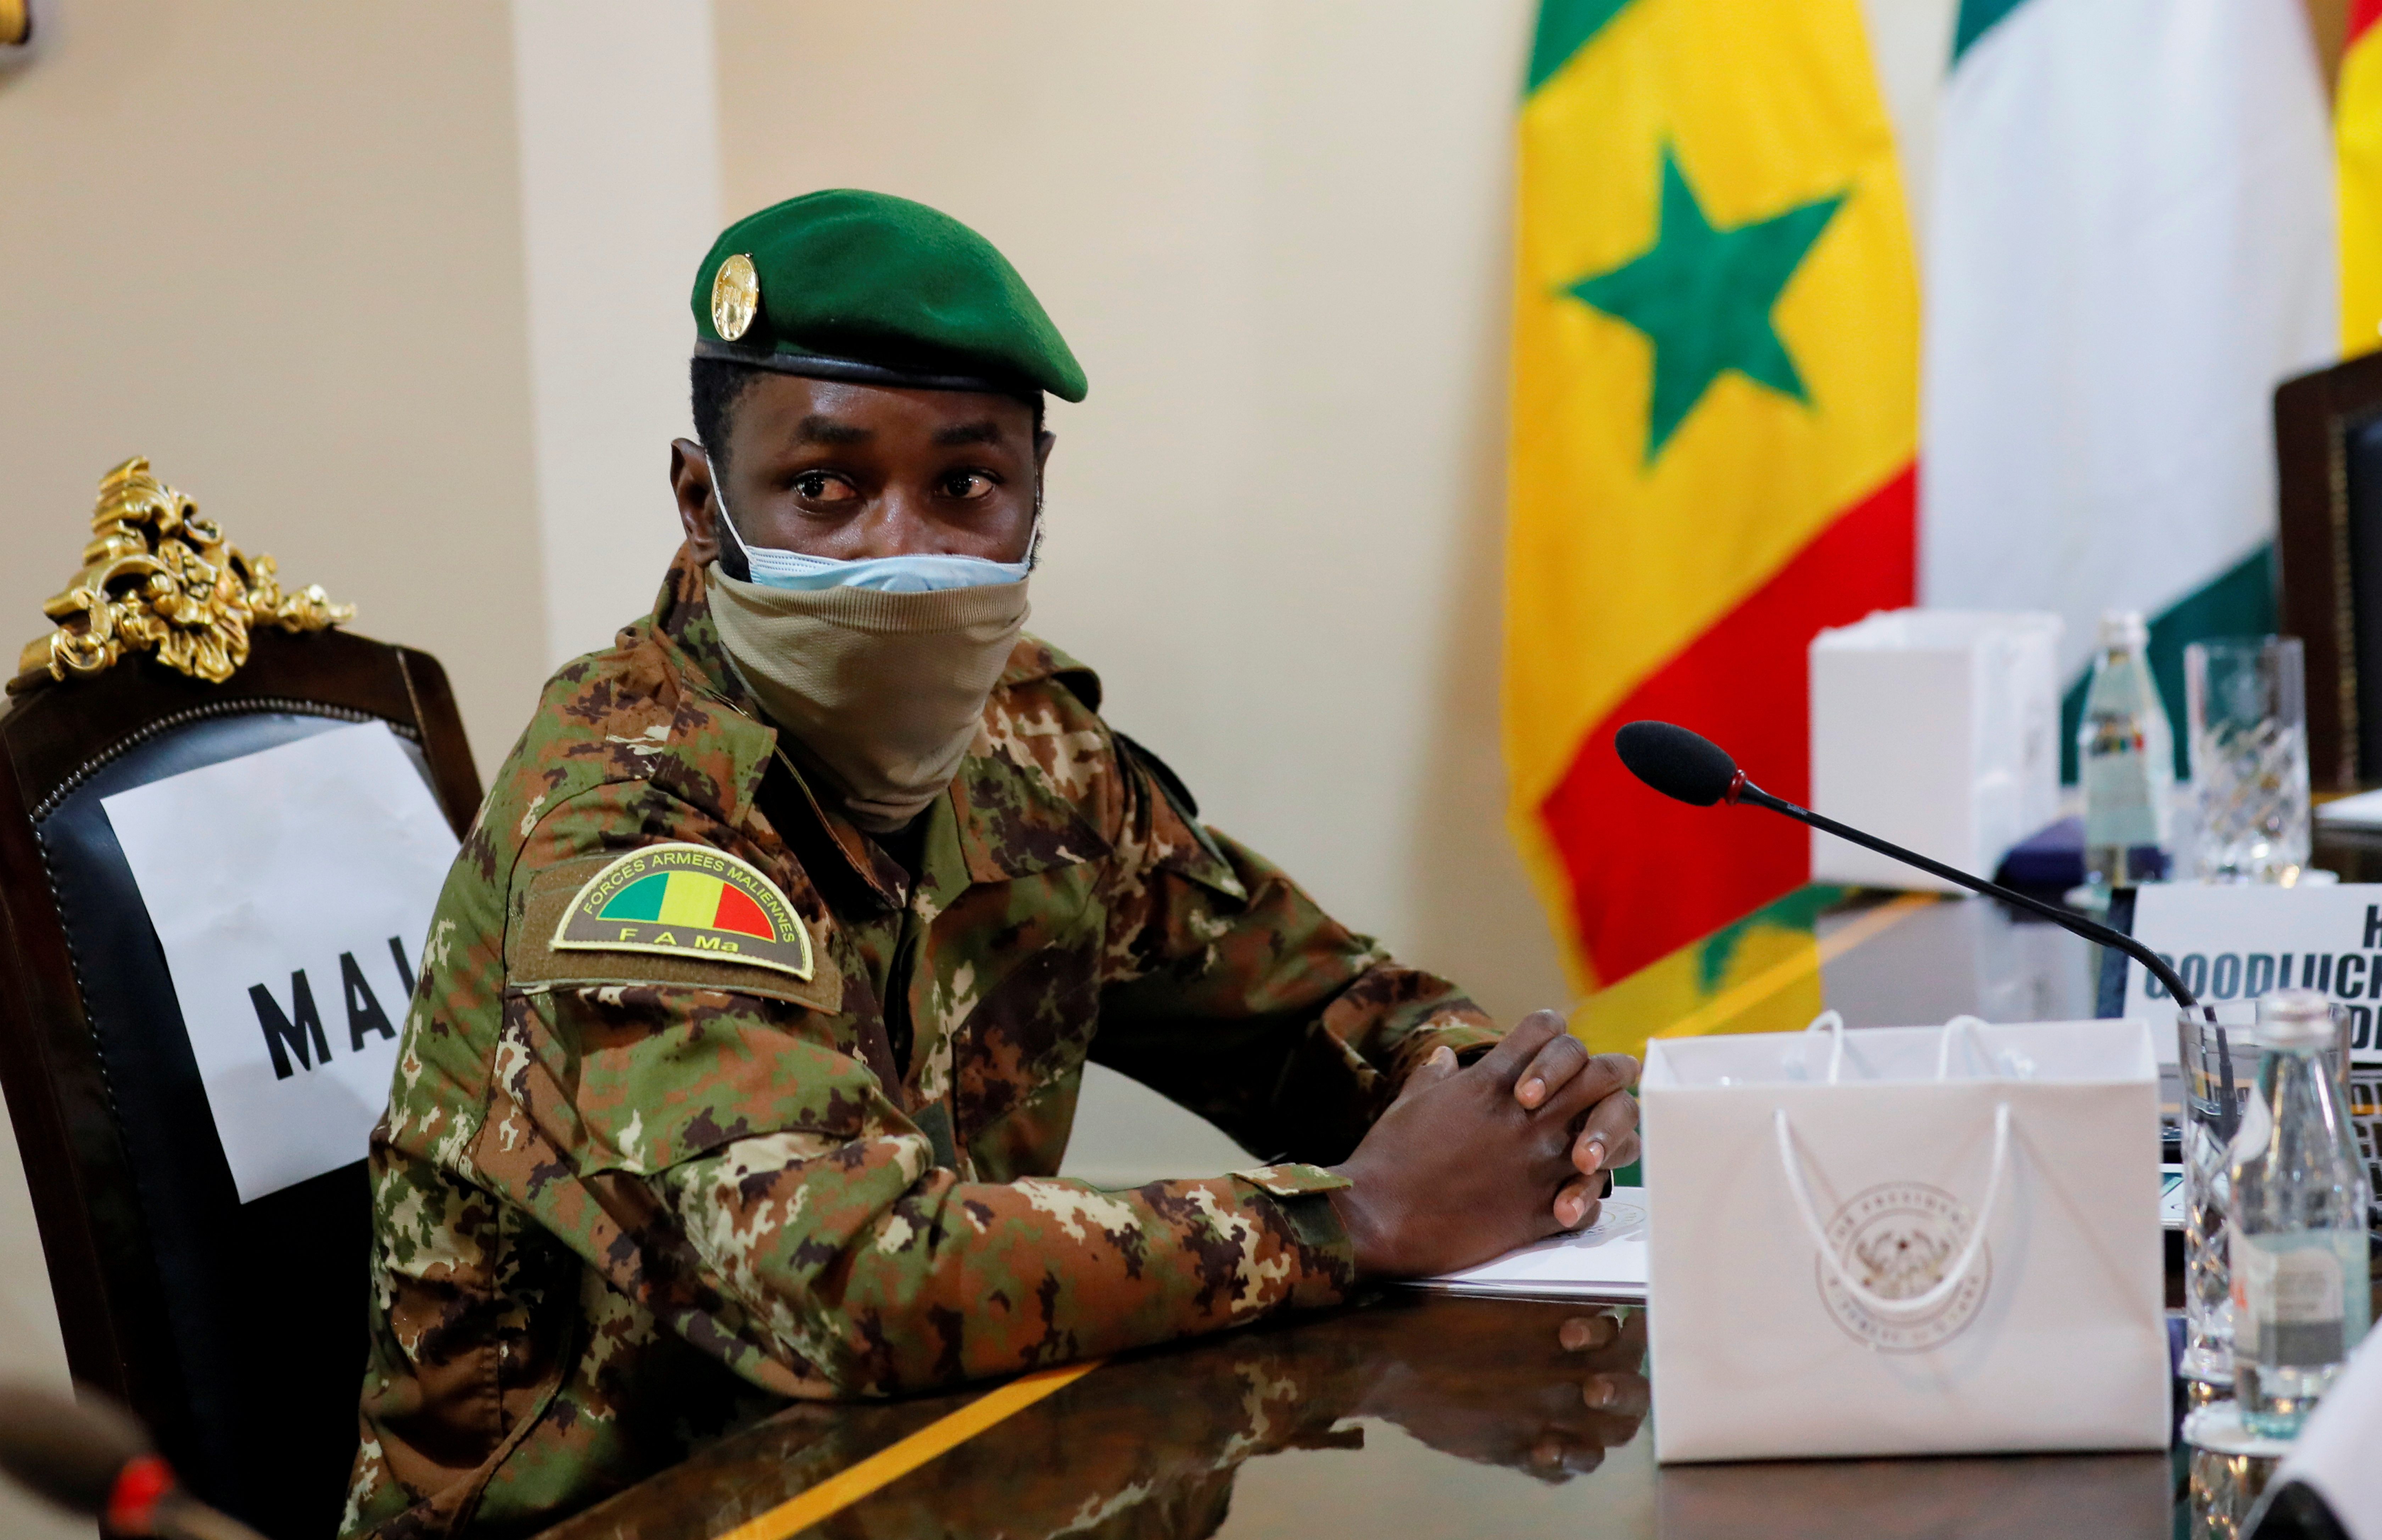         Colonelul Asimi Guetta, liderul consiliului militar din Mali, participă la reuniunea consultativă a Comunității Economice a Statelor Africii de Vest (ECOWAS) la Accra, Ghana, 15 septembrie 2020. (Reuters) / Francis Cocoroco / File Photo